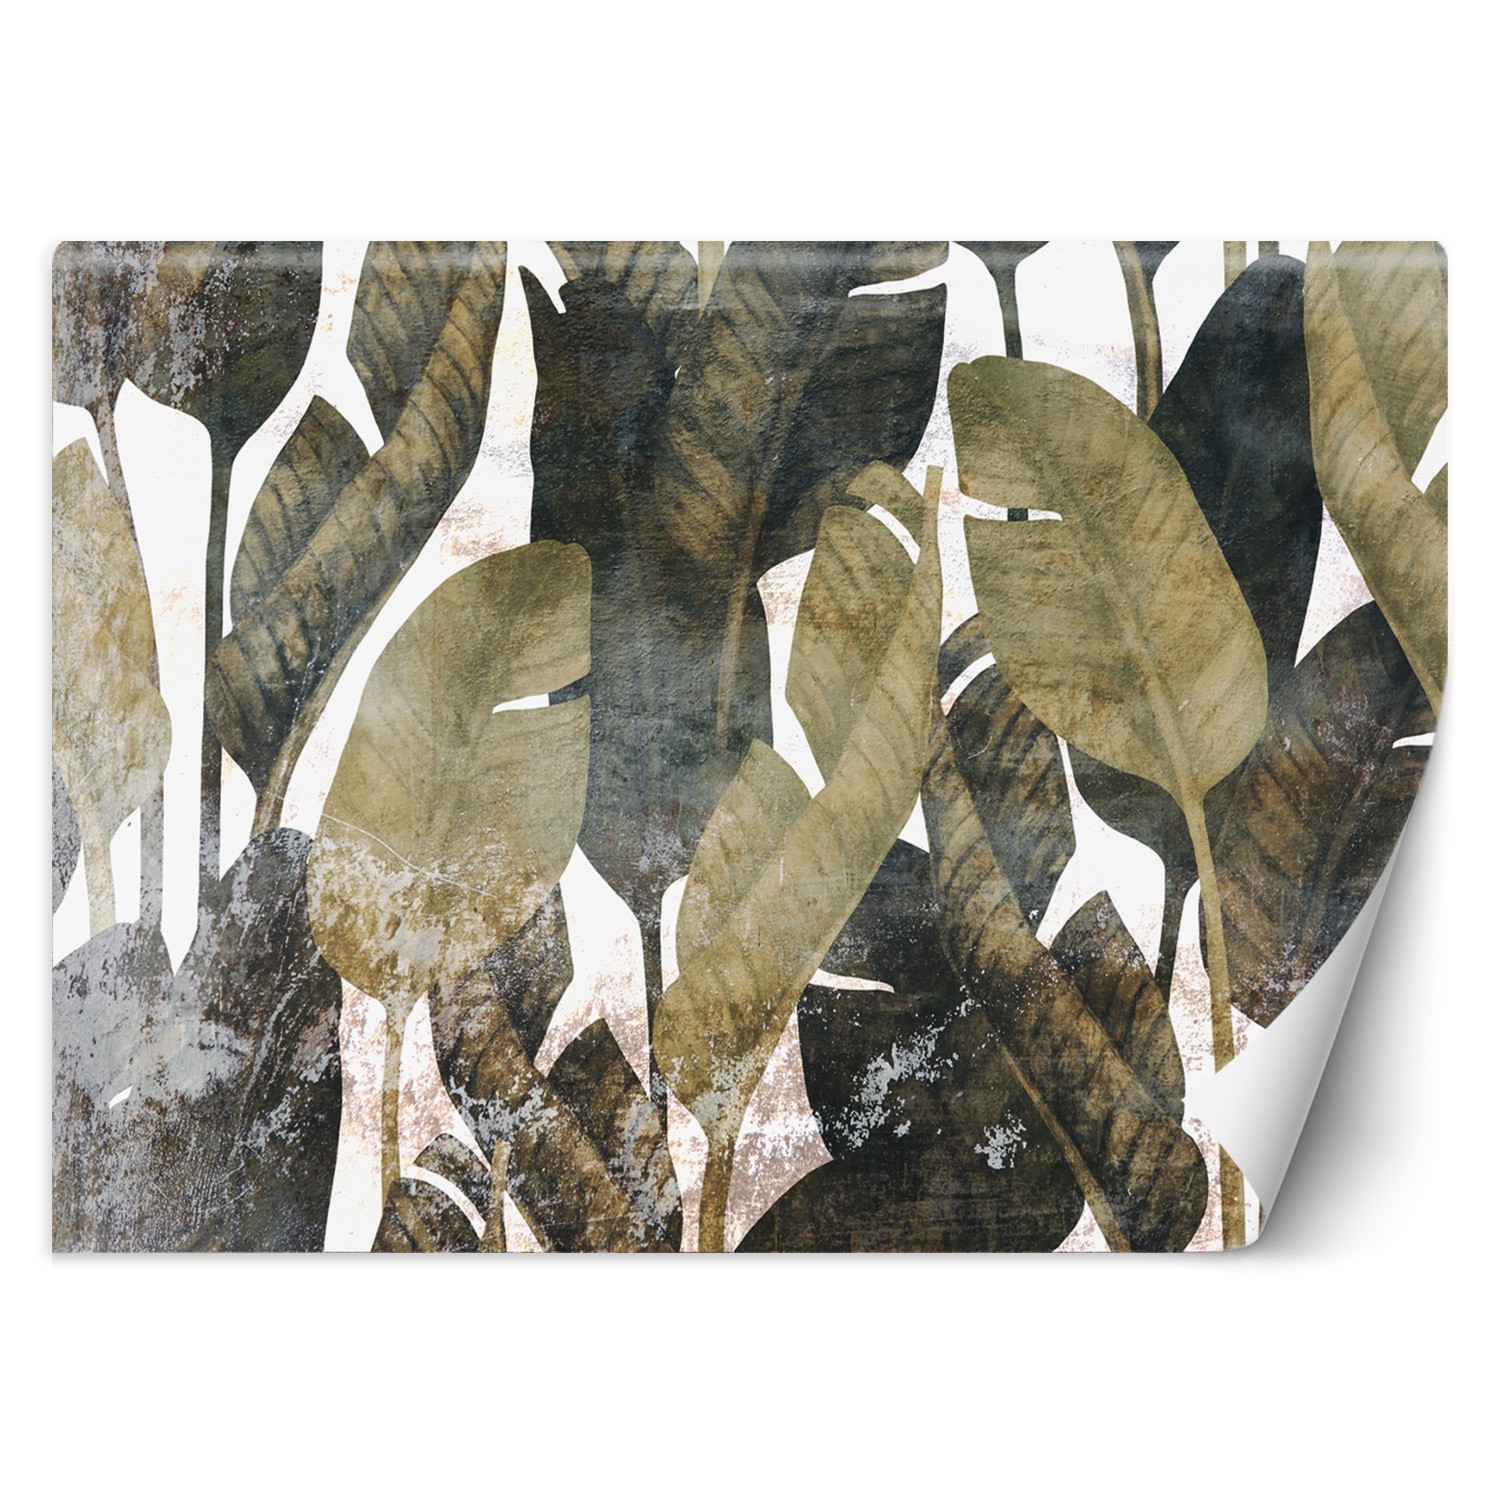 Trend24 – Behang – Bananenblaadjes – Behangpapier – Fotobehang 3D – Behang Woonkamer – 400x280x2 cm – Incl. behanglijm